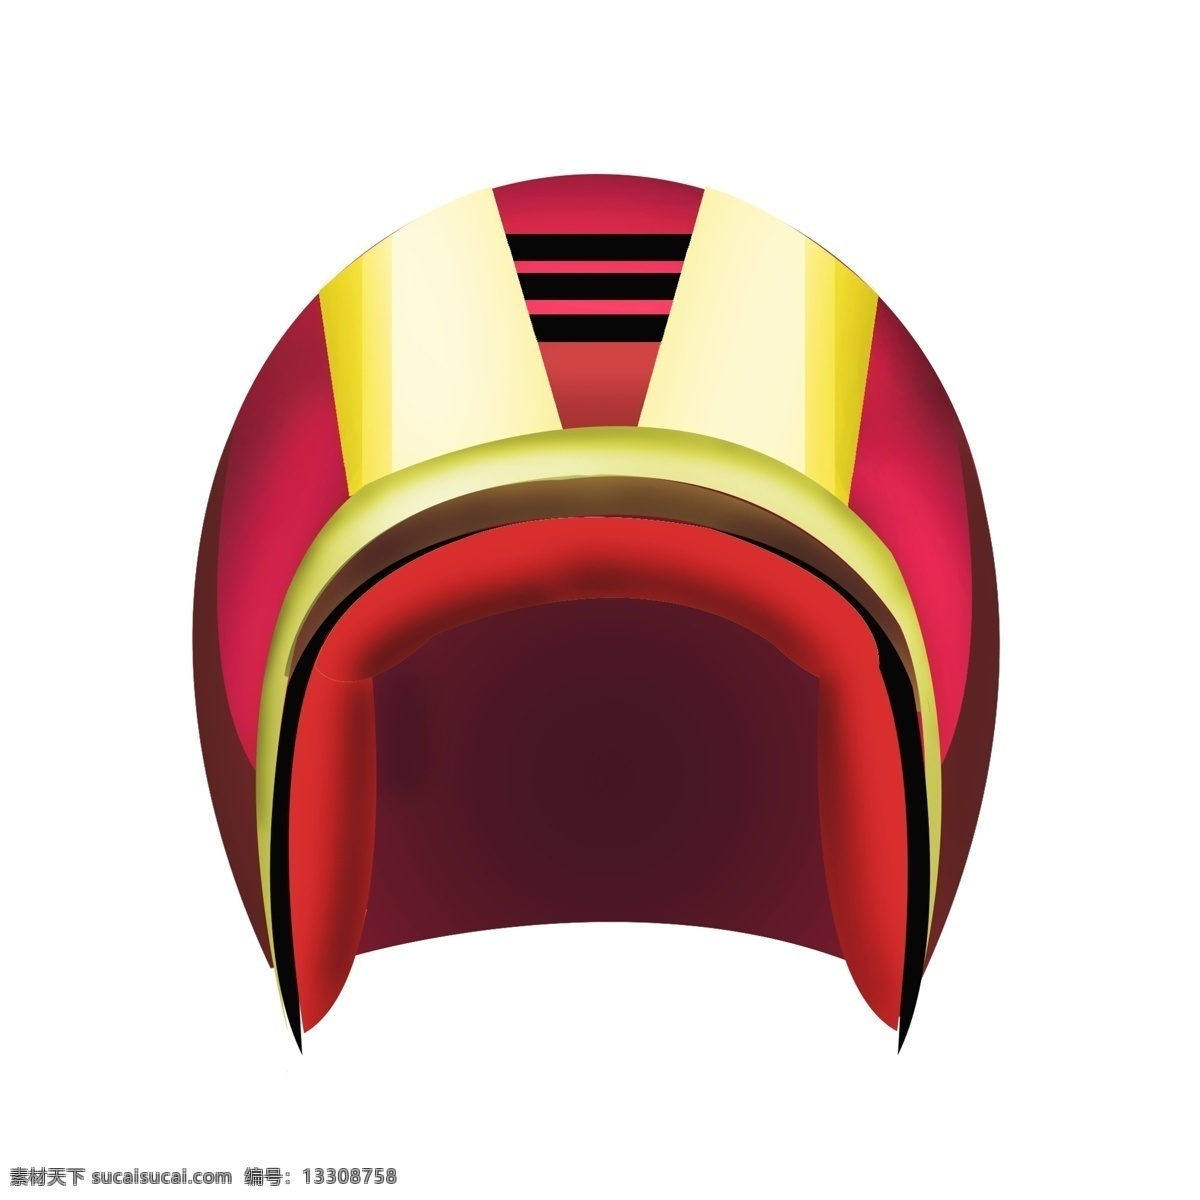 防范 保护 头盔 插画 骑士之夜 红色头盔 勇士之夜 黑暗骑士 斯巴达 铠甲 防范保护头盔